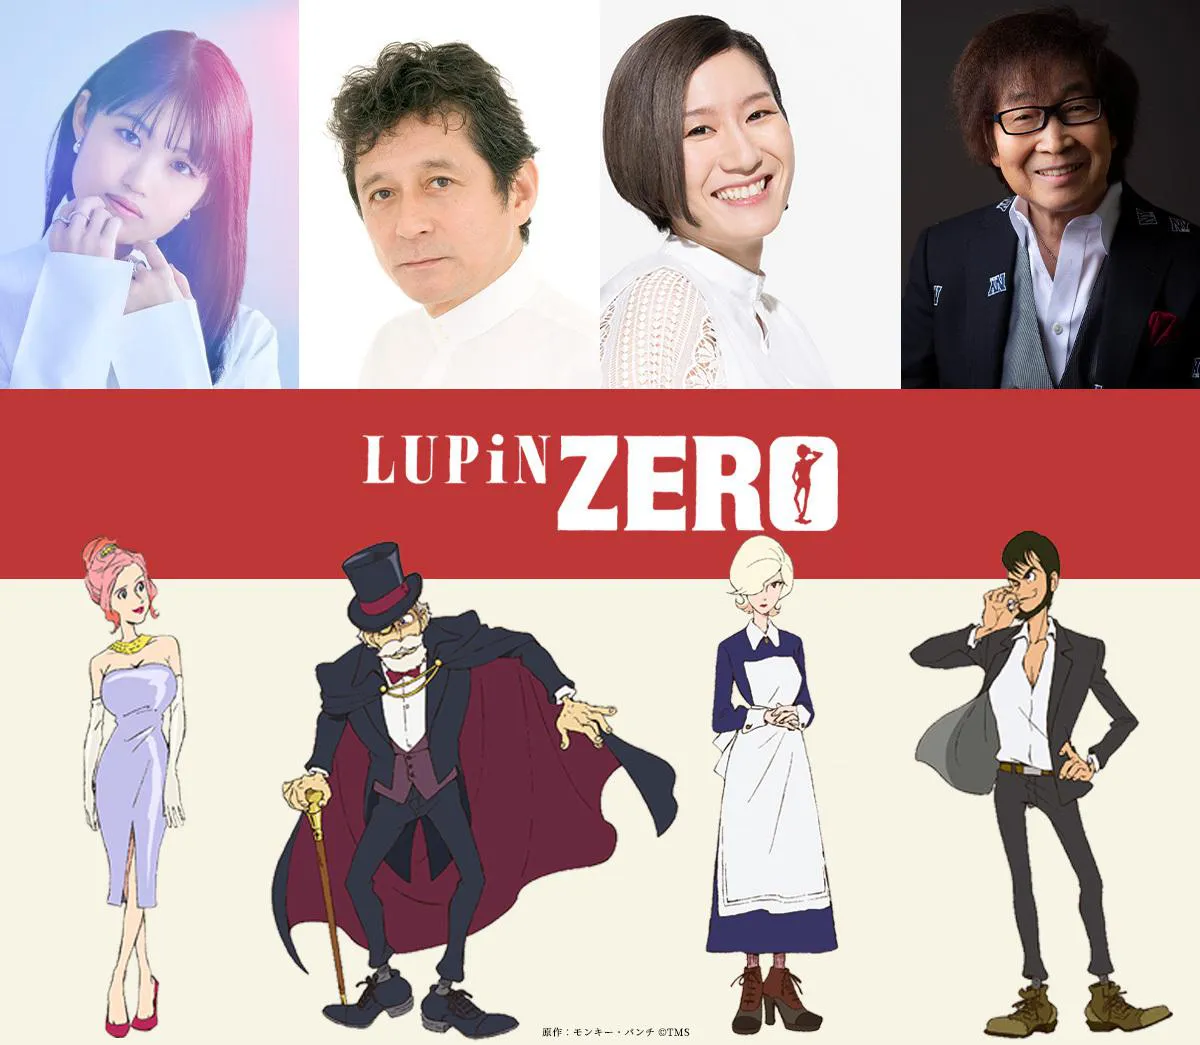 「ルパン三世」のスピンオフアニメ「LUPIN ZERO」がDMMで12月16日(金)から独占配信決定